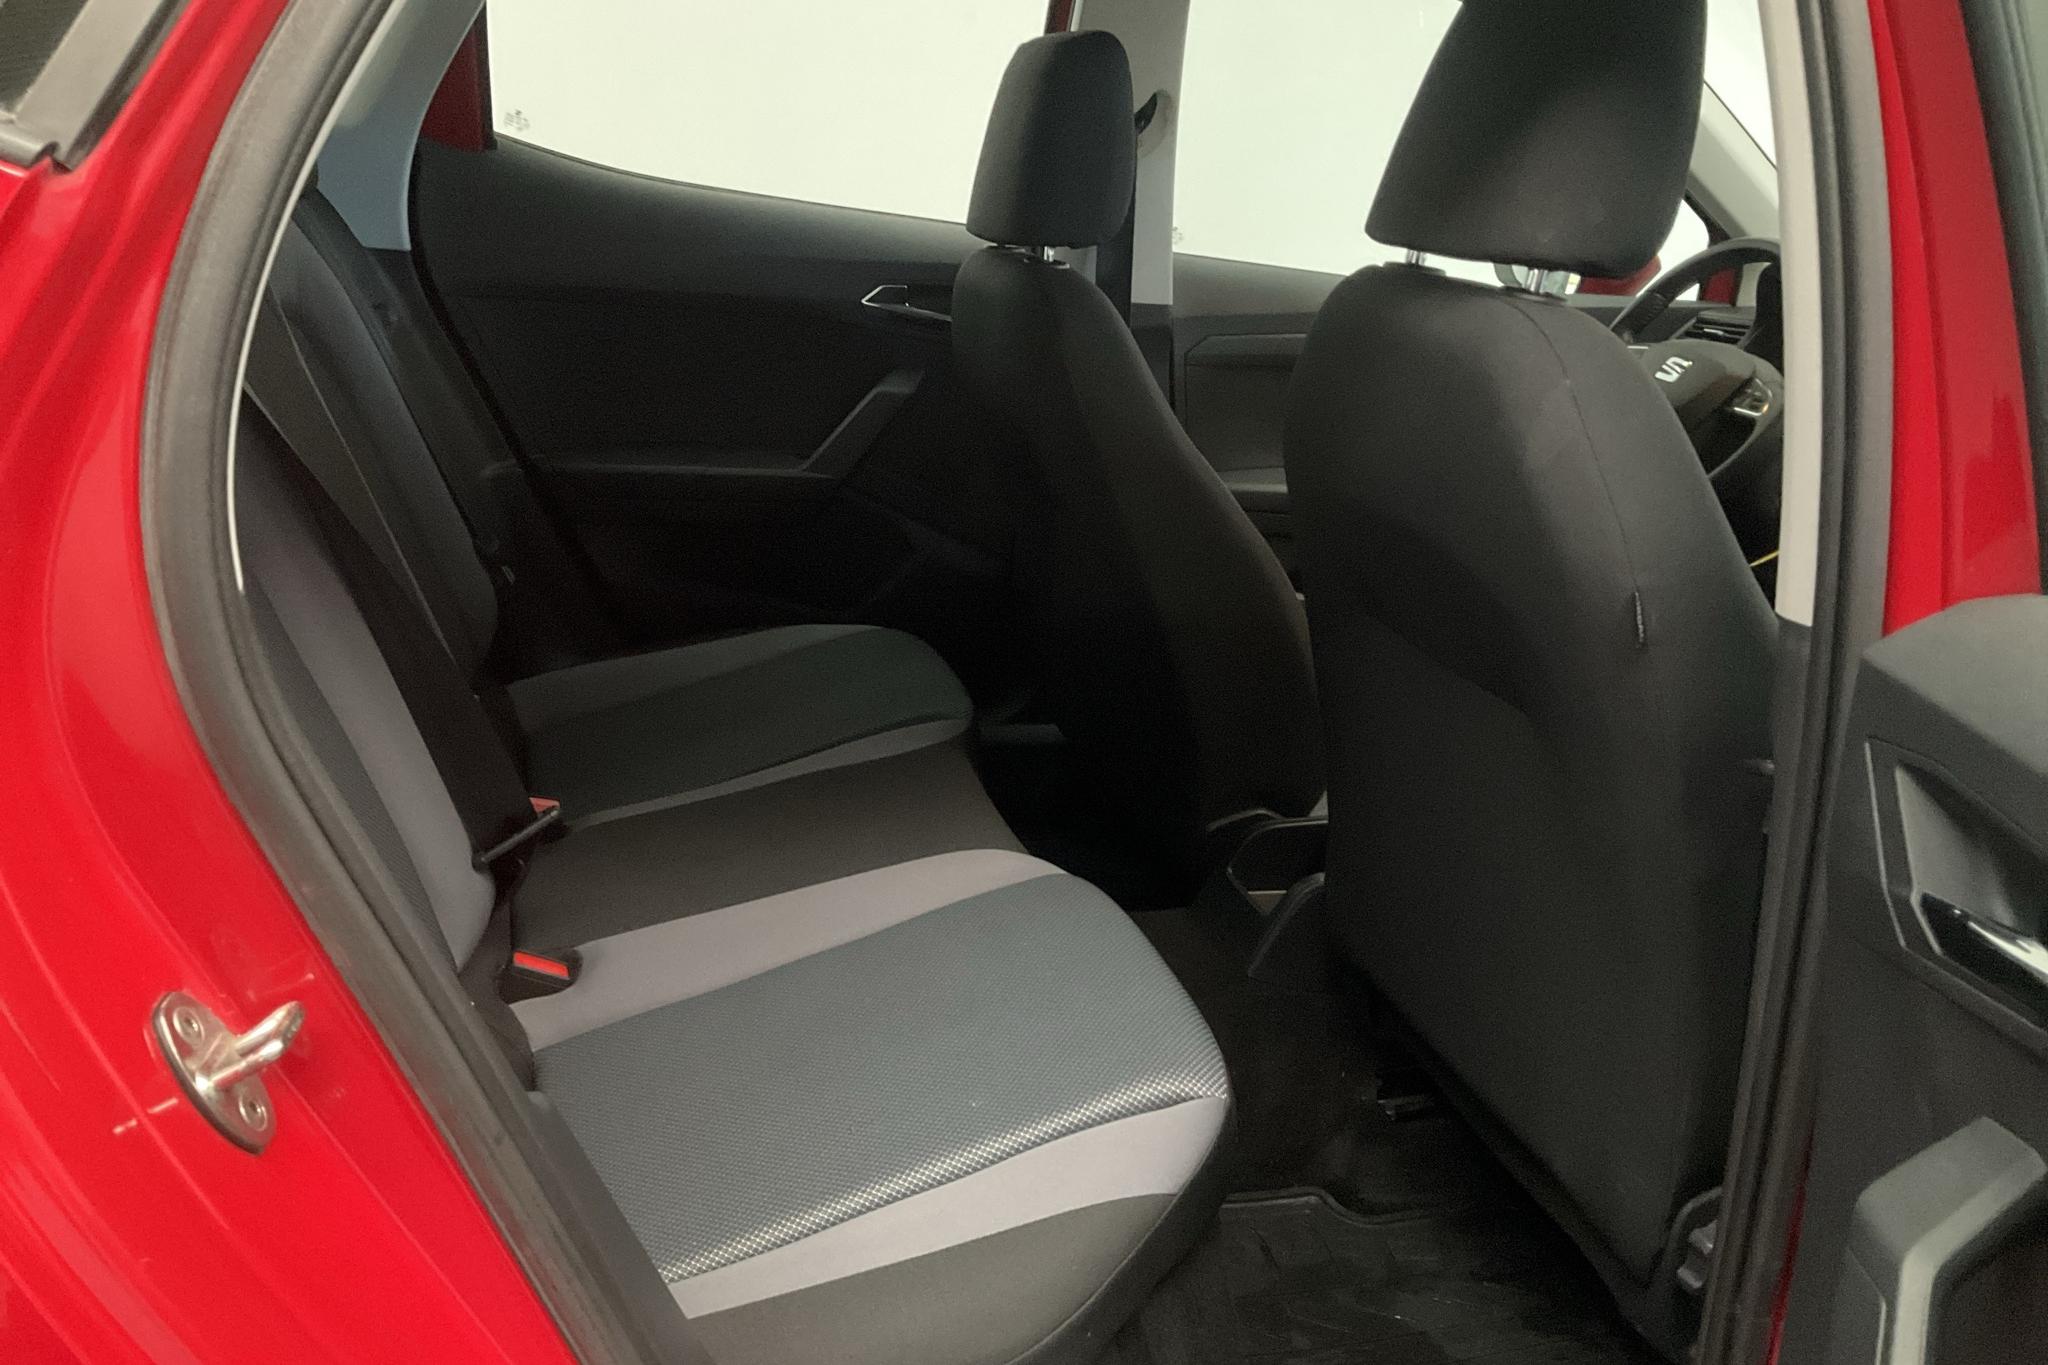 Seat Arona 1.6 TDI 5dr (95hk) - 97 320 km - Manual - red - 2020